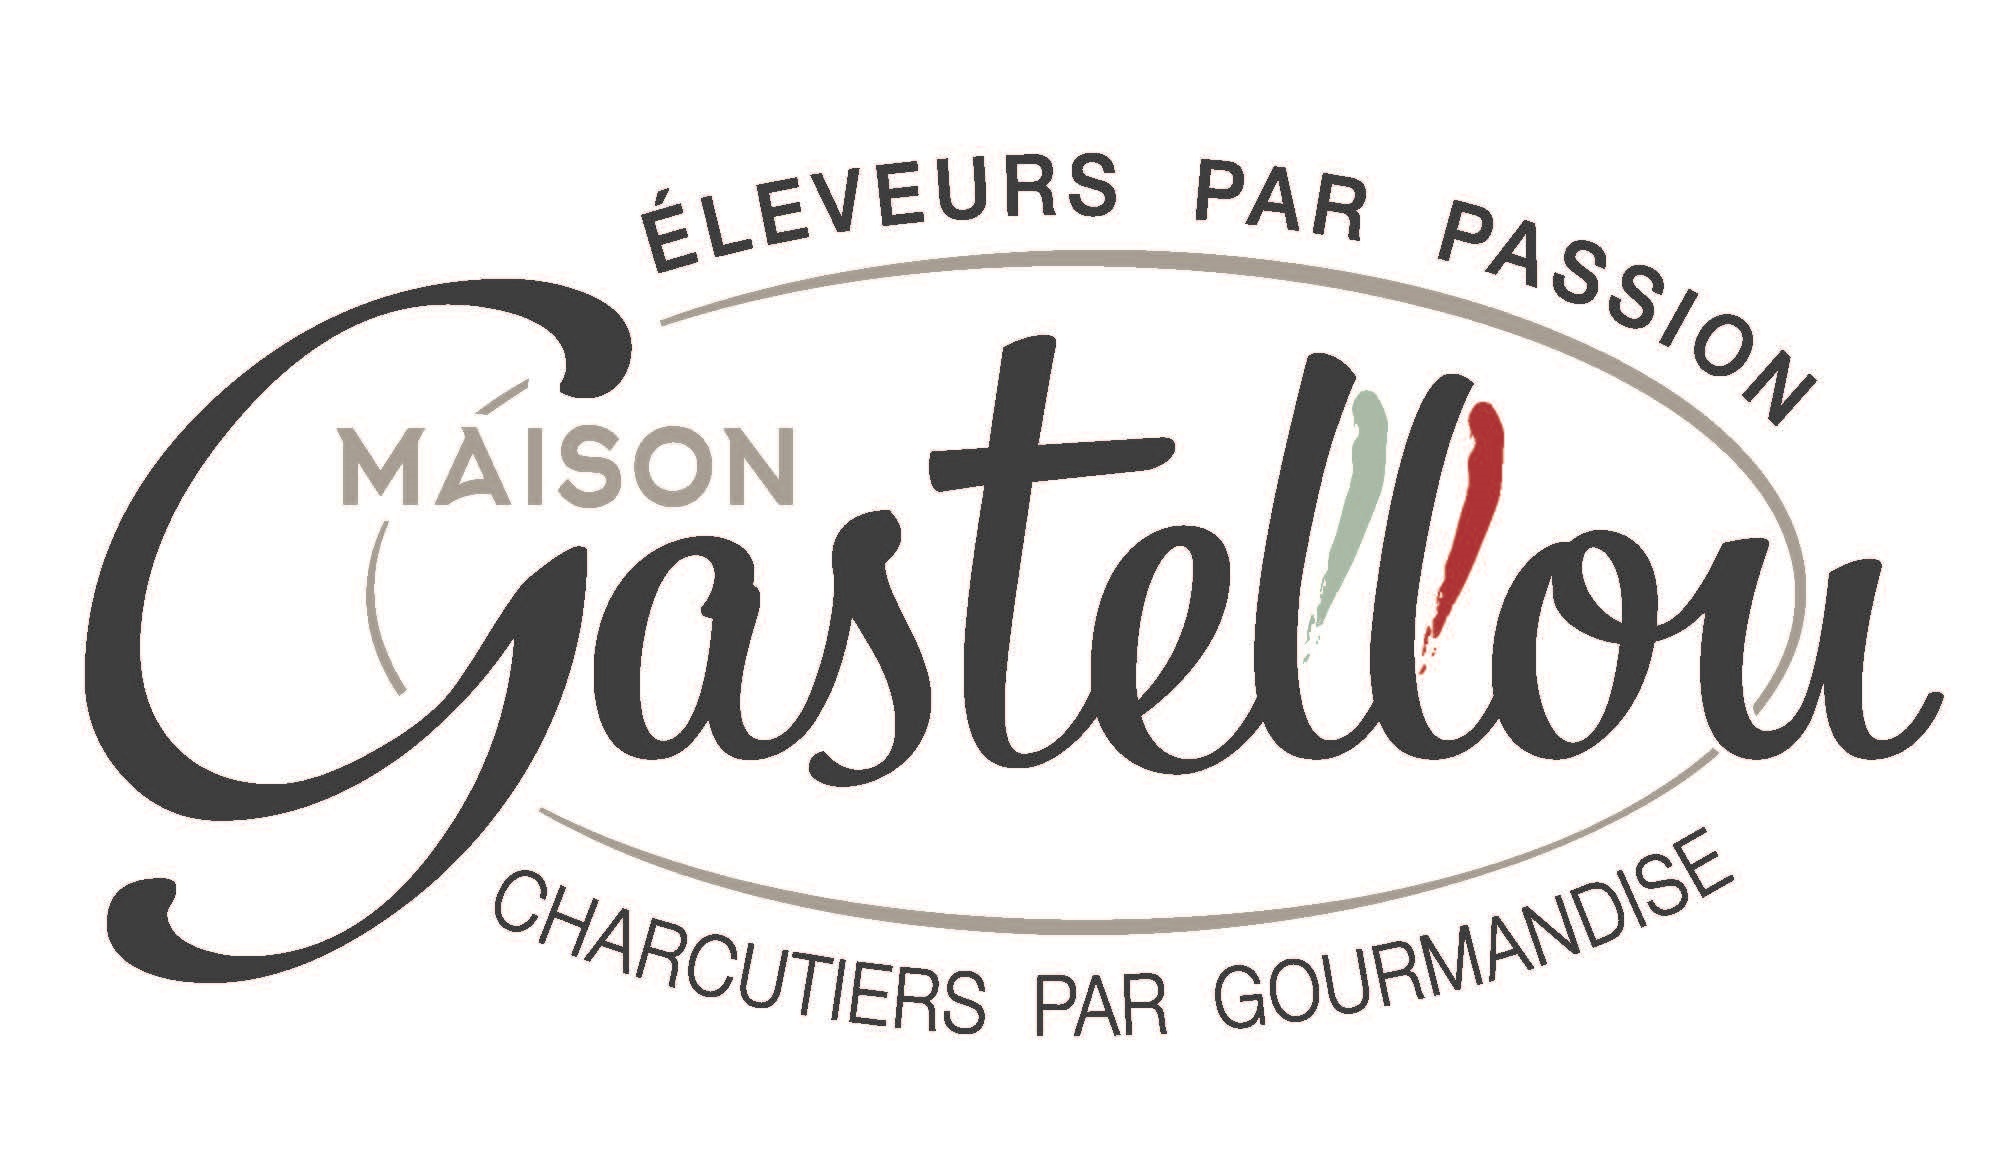 maison-gastellou-logo